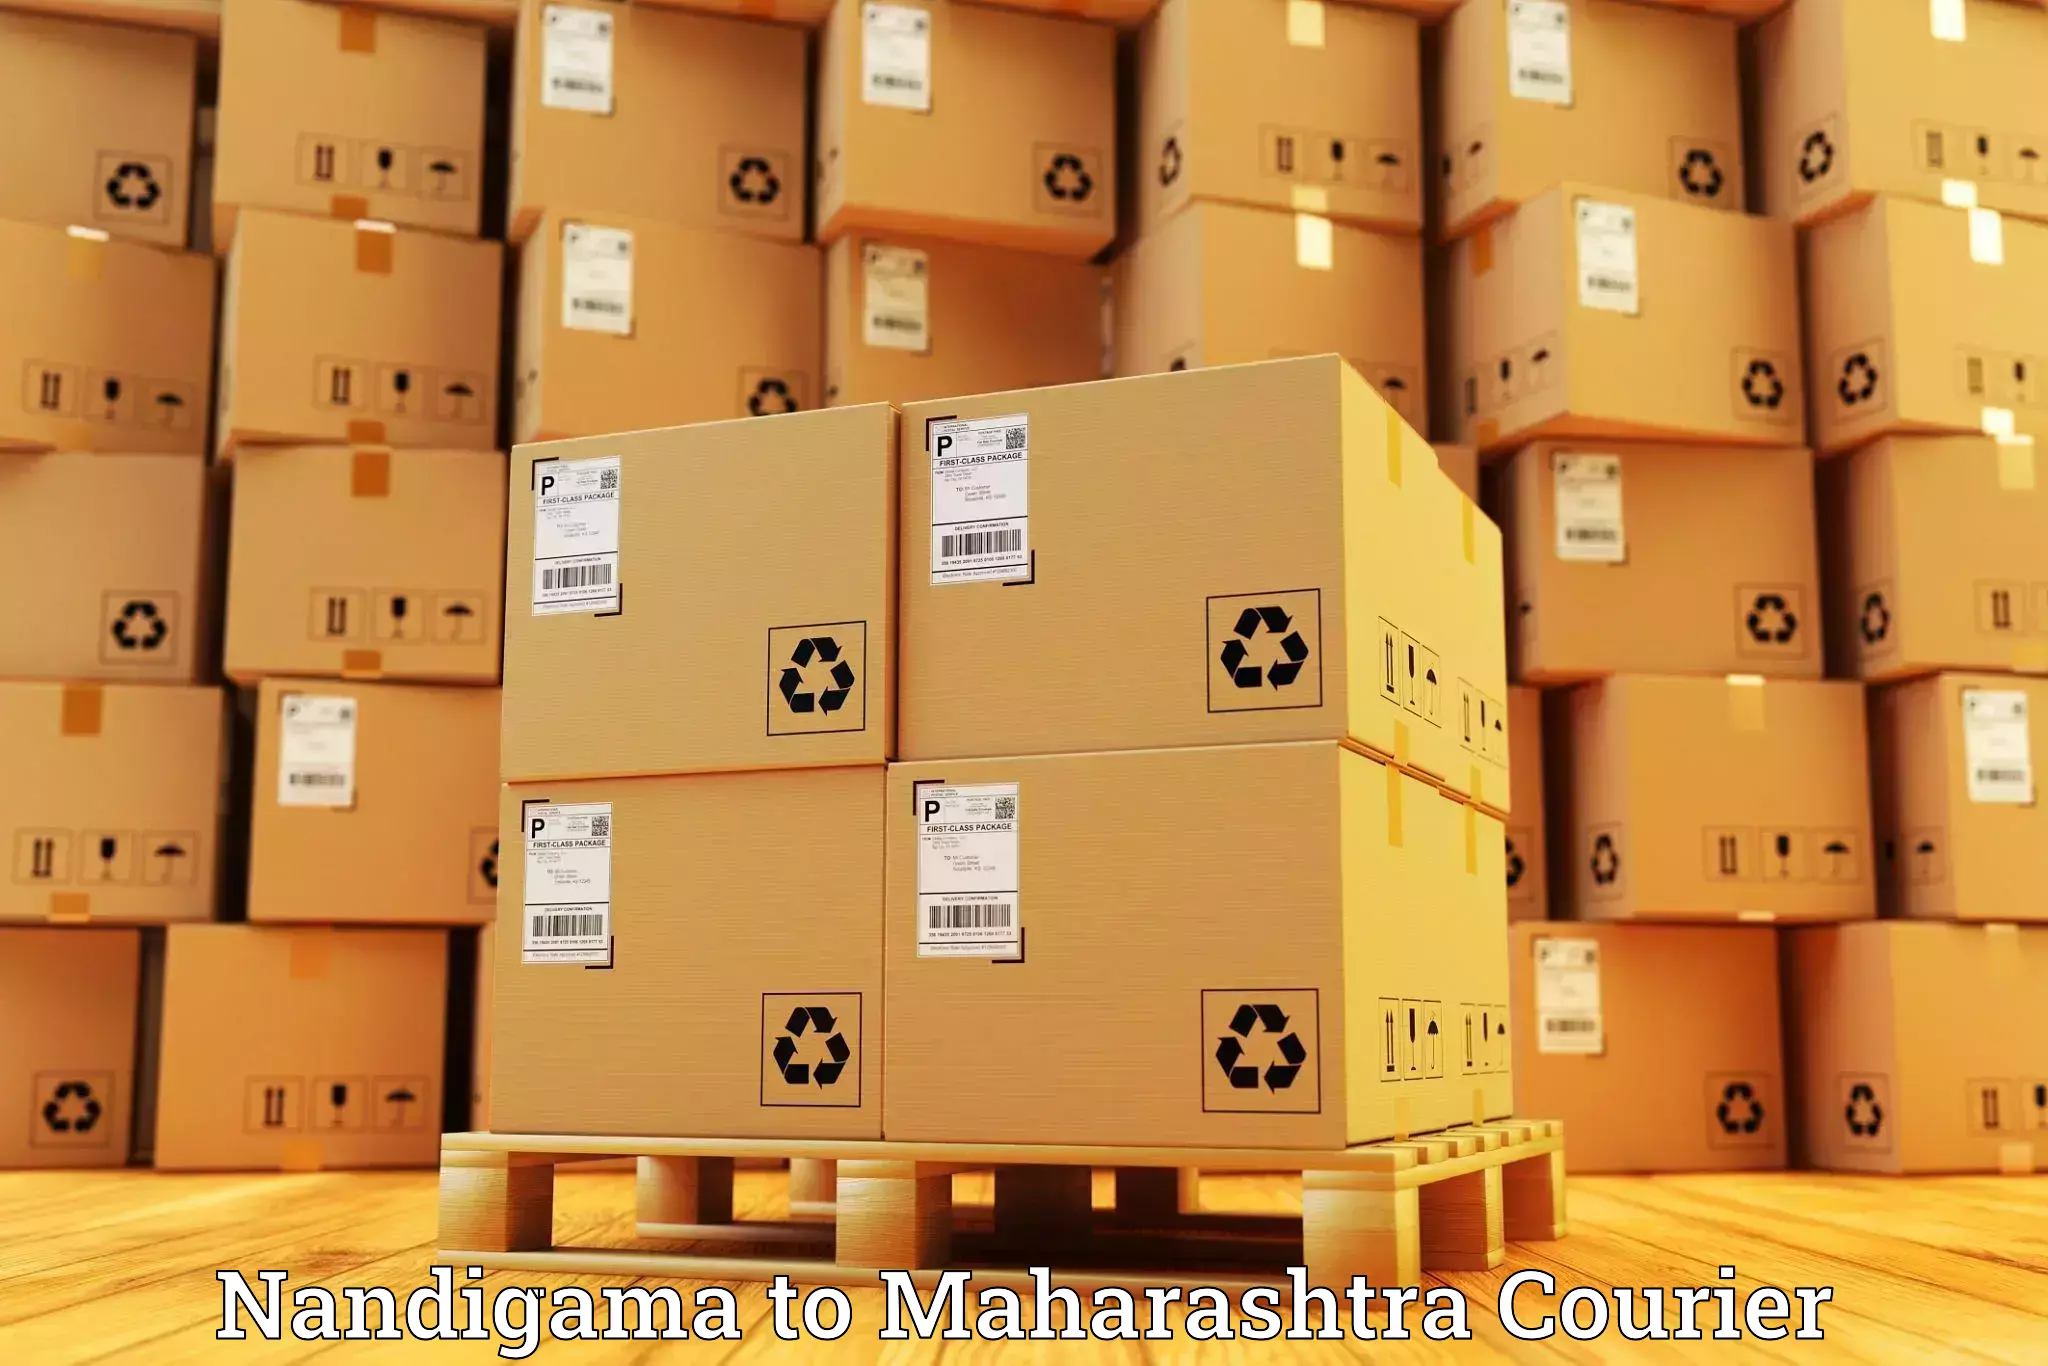 Global freight services Nandigama to Maharashtra